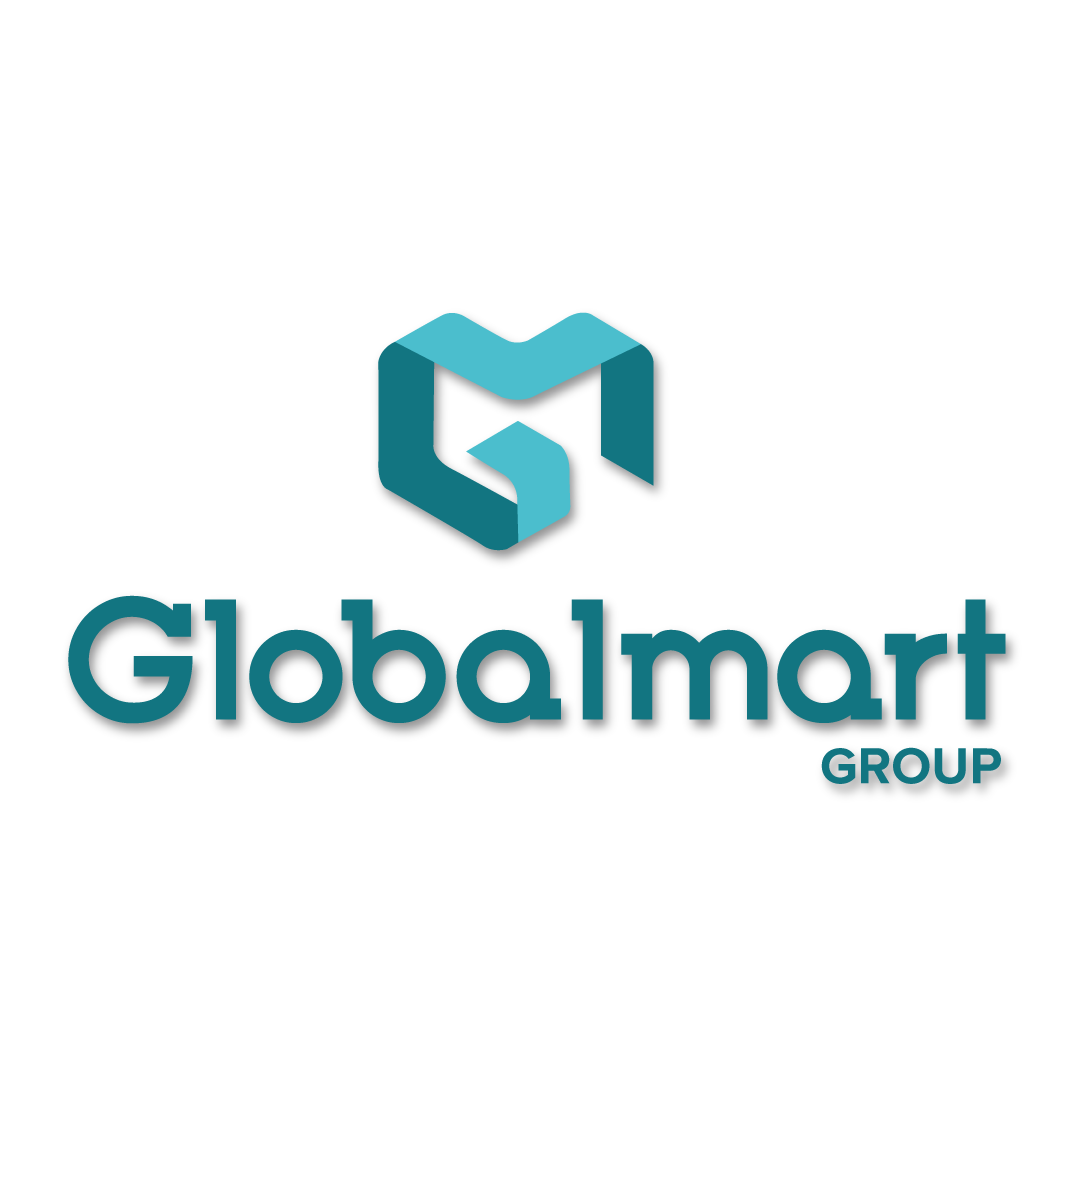 Globalmart Group